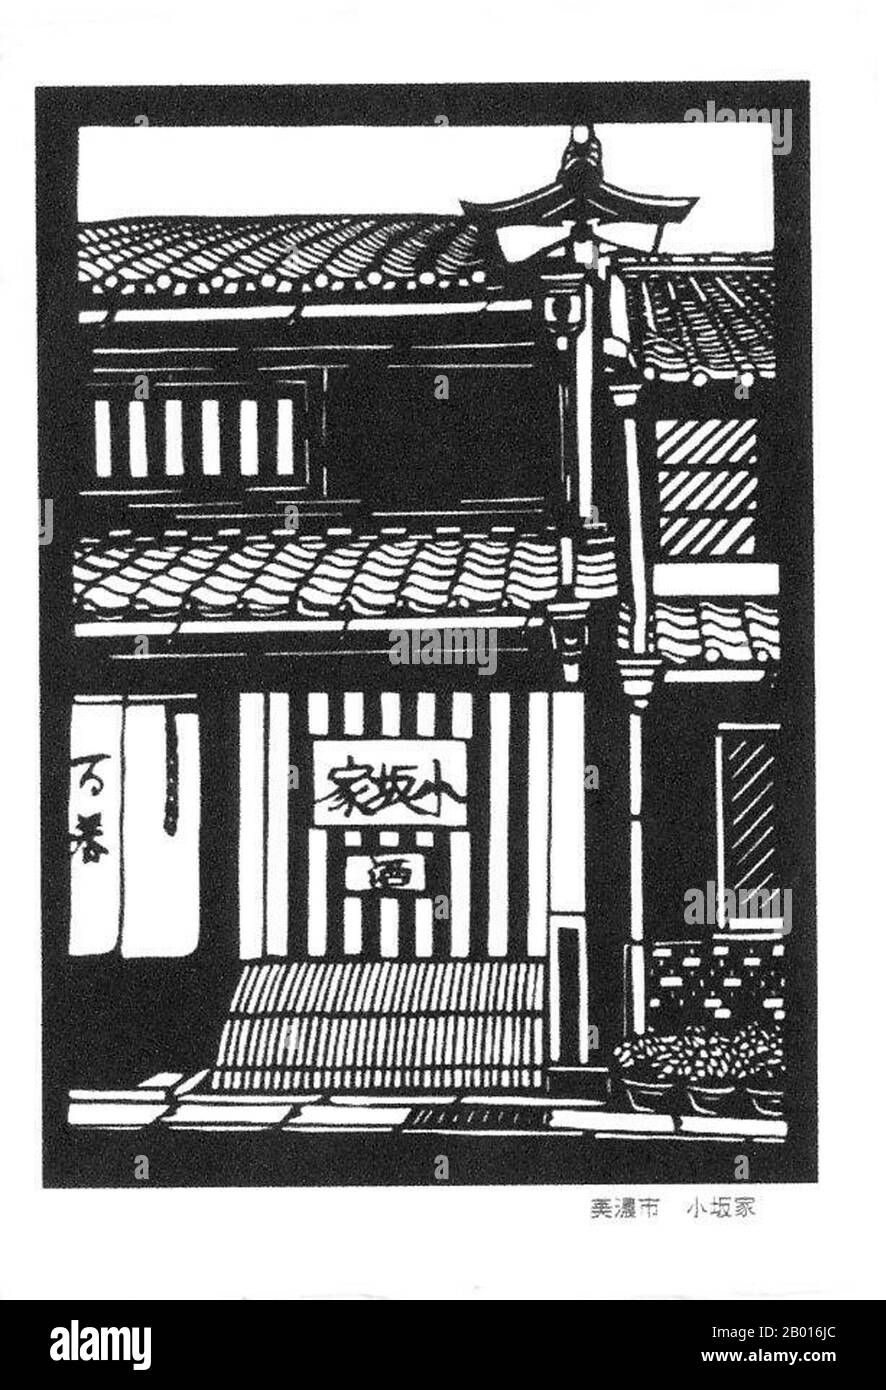 Japan: 'Alte Gebäude aus der Edo-Zeit in der Stadt Mino, Präfektur Gifu'. Ukiyo-e Holzschnitt, Anfang des 20. Jahrhunderts. Mino ist eine Stadt in der Präfektur Gifu im Zentrum Japans. Die Stadt ist bekannt für das traditionelle japanische Mino-Washi-Papier und seine Straßen, die im Stil der frühen Edo-Zeit (1603-1868) stehen. Stockfoto